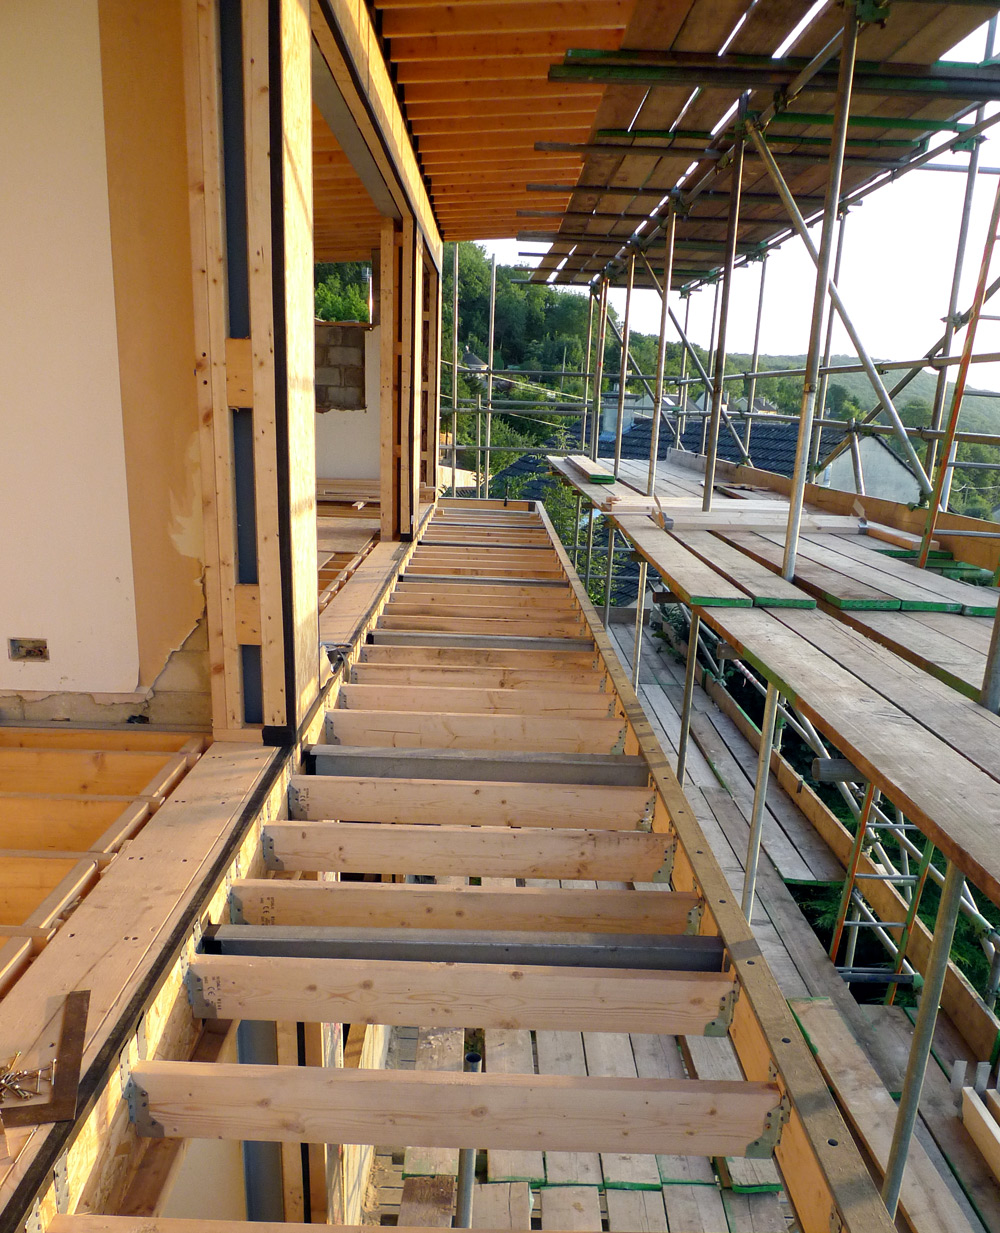 Rebuild - Balcony joists and timber infills on upper floor